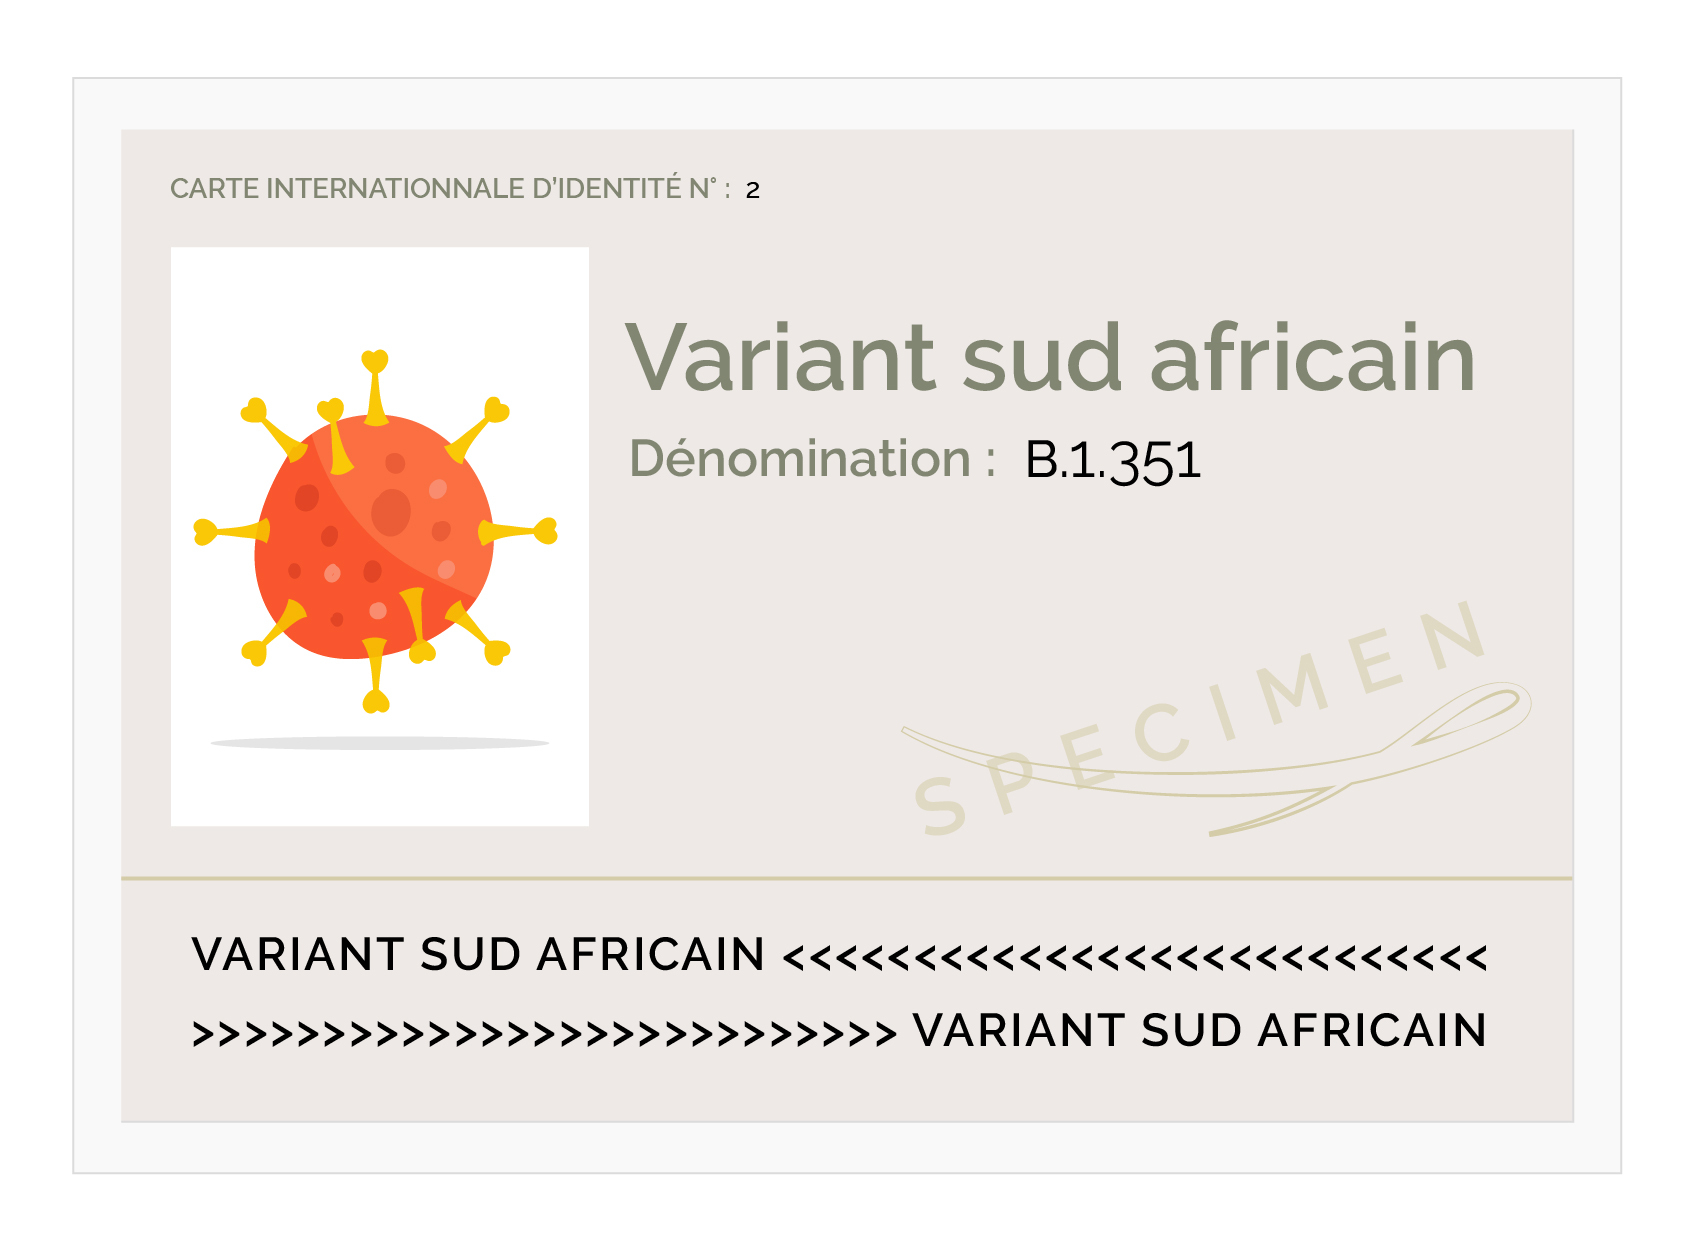 carte d identite variant V2_variant sud africain (1)